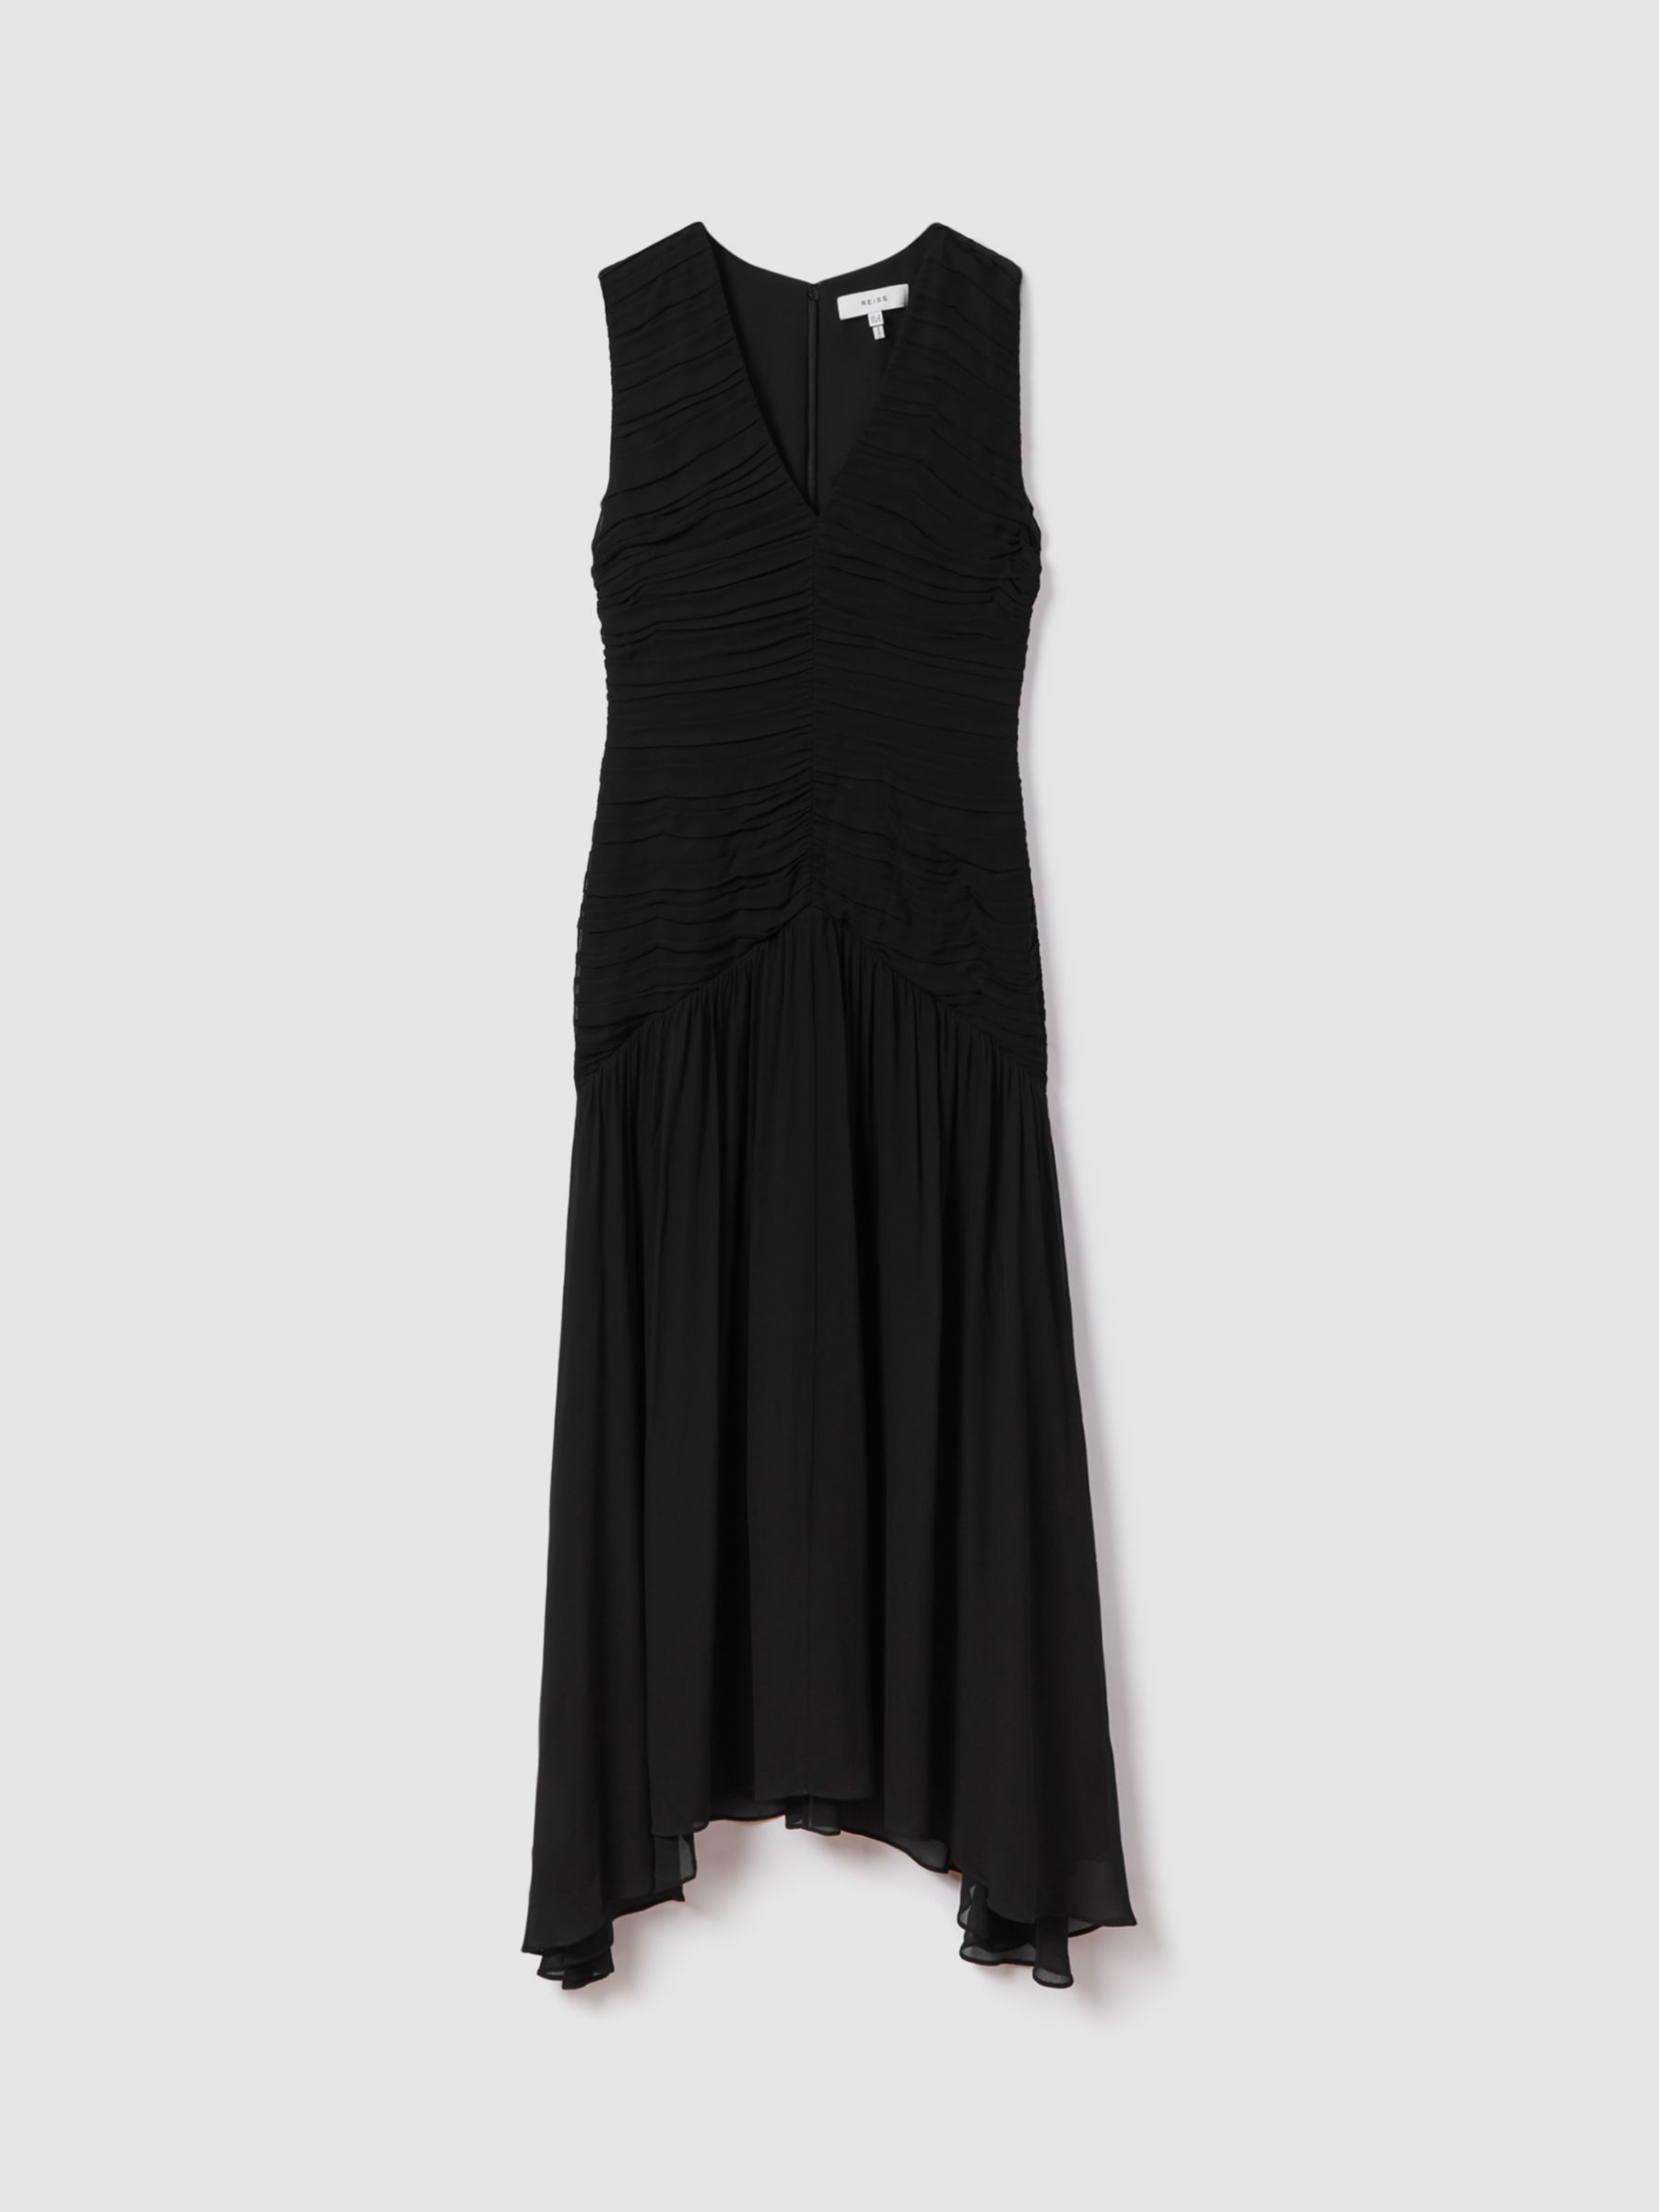 Reiss Saffy Ruched Midi Dress, Black, 6